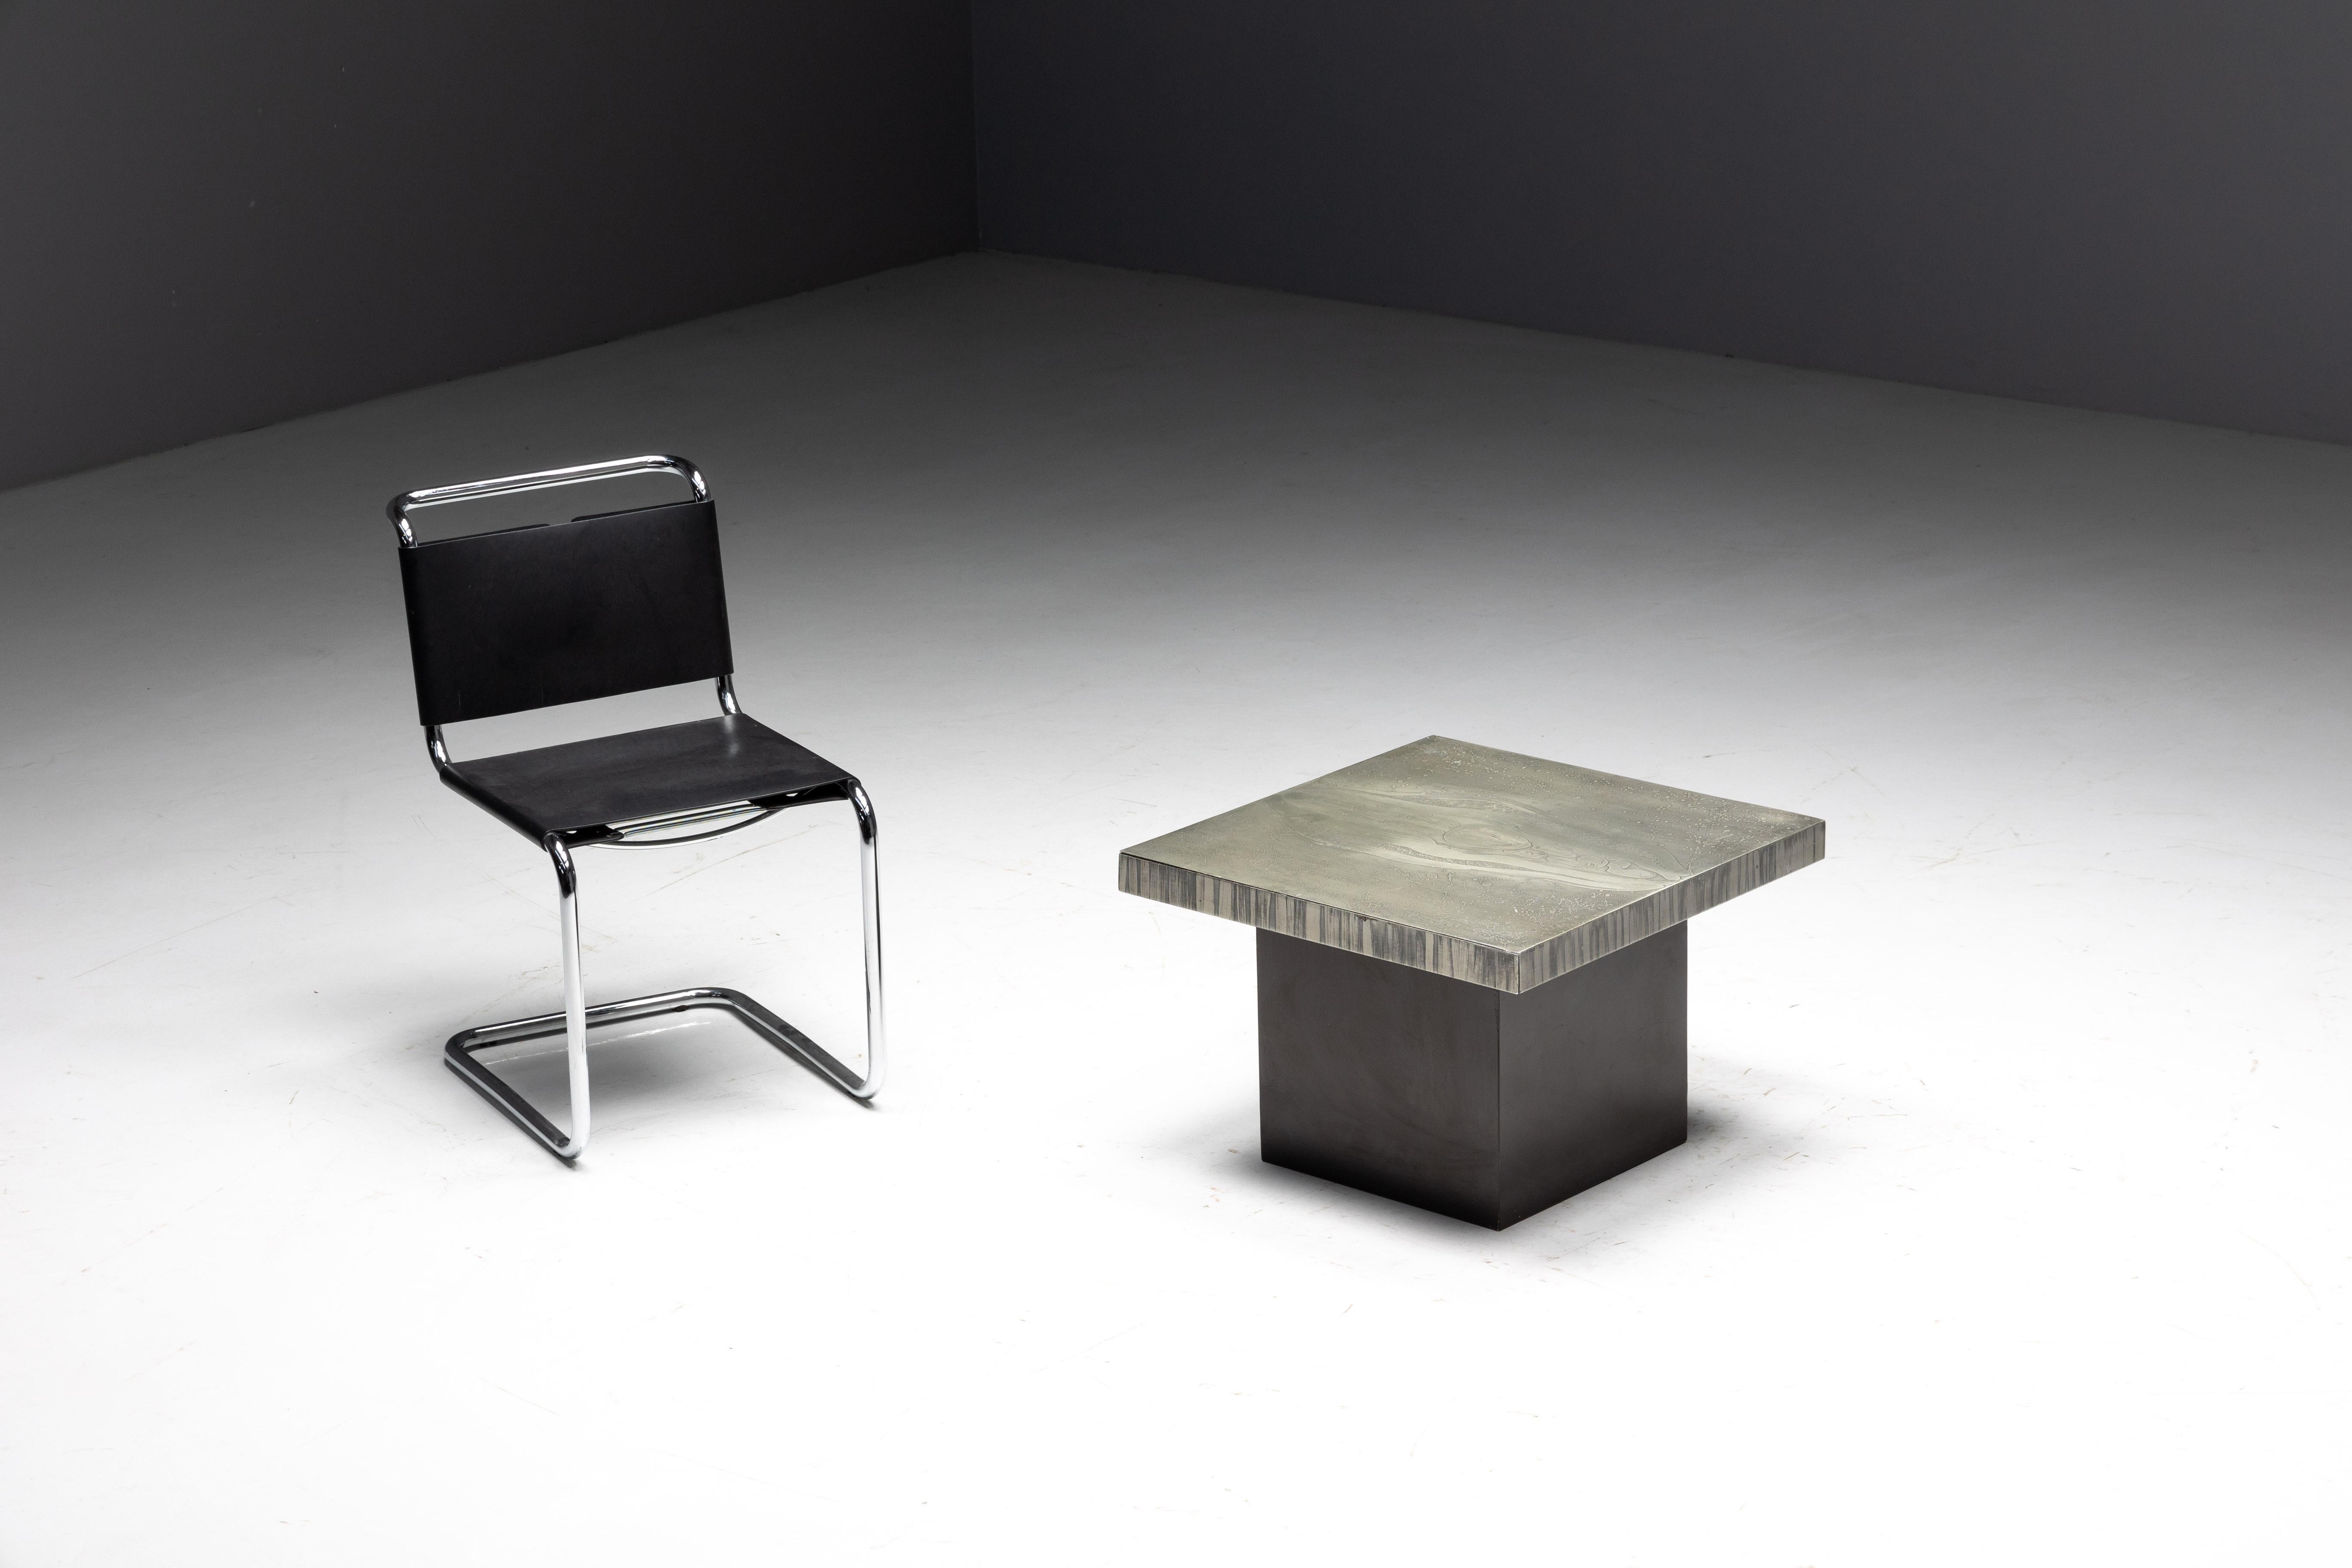 Table basse carrée du designer belge Marc D'Haenens, la pièce maîtresse parfaite pour votre intérieur. Au cœur de cette table se trouve un plateau carré en aluminium, méticuleusement gravé à la perfection, mettant en valeur des motifs complexes.